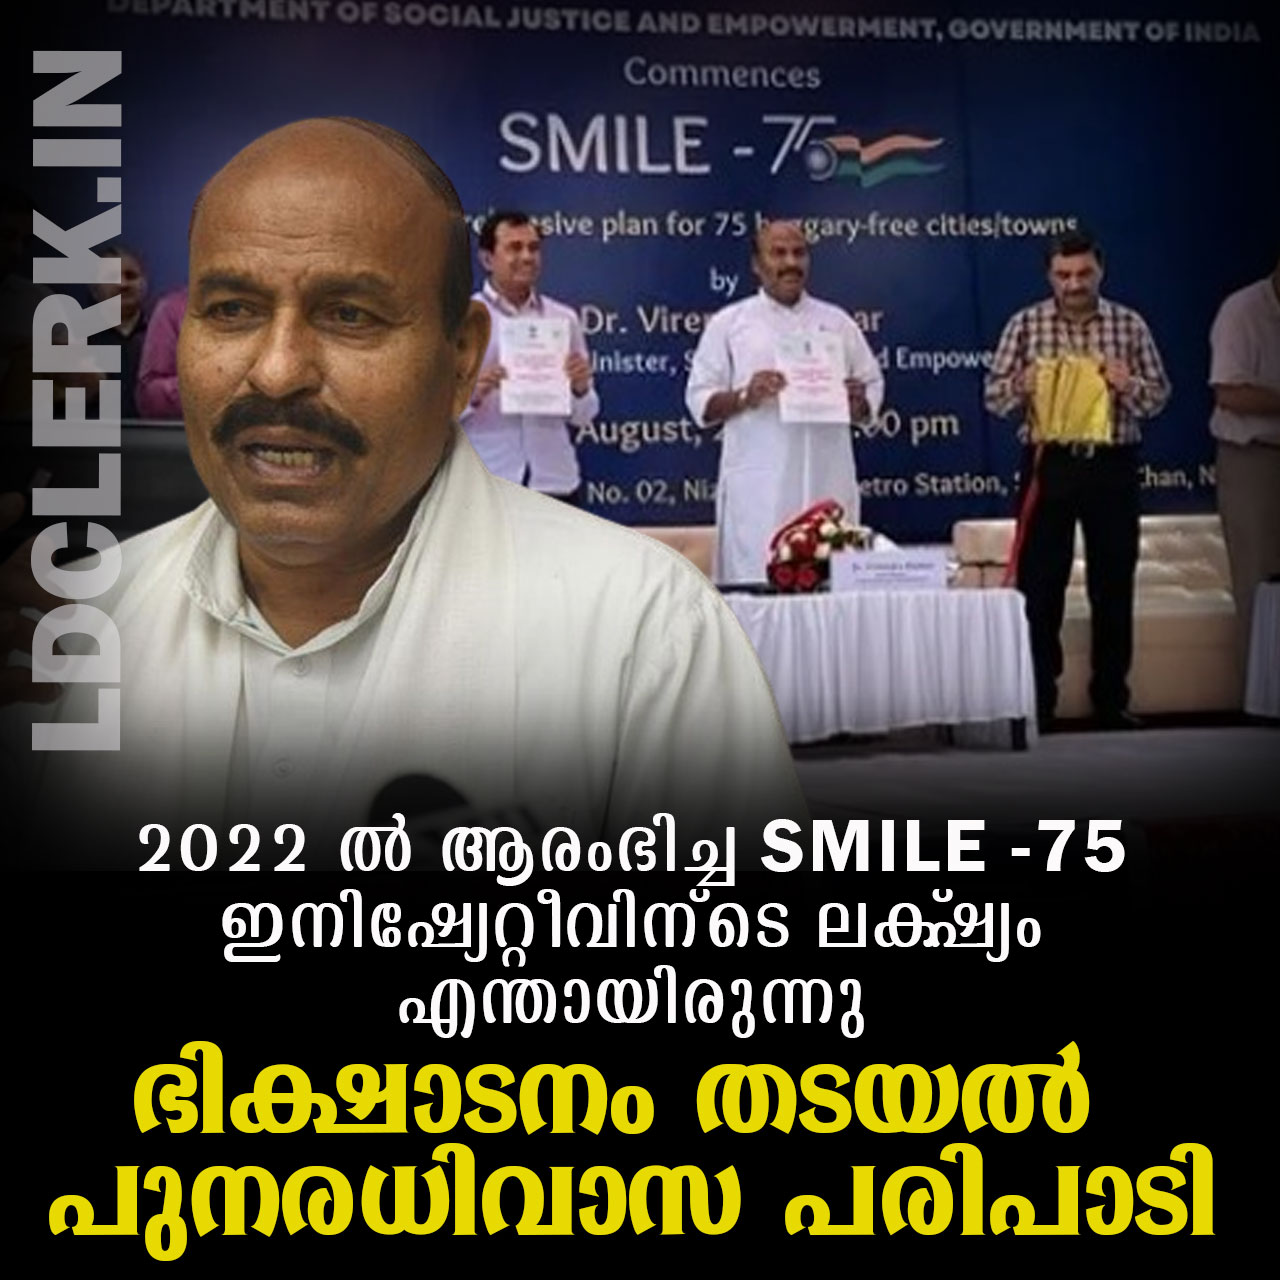 SMILE-75 Initiative